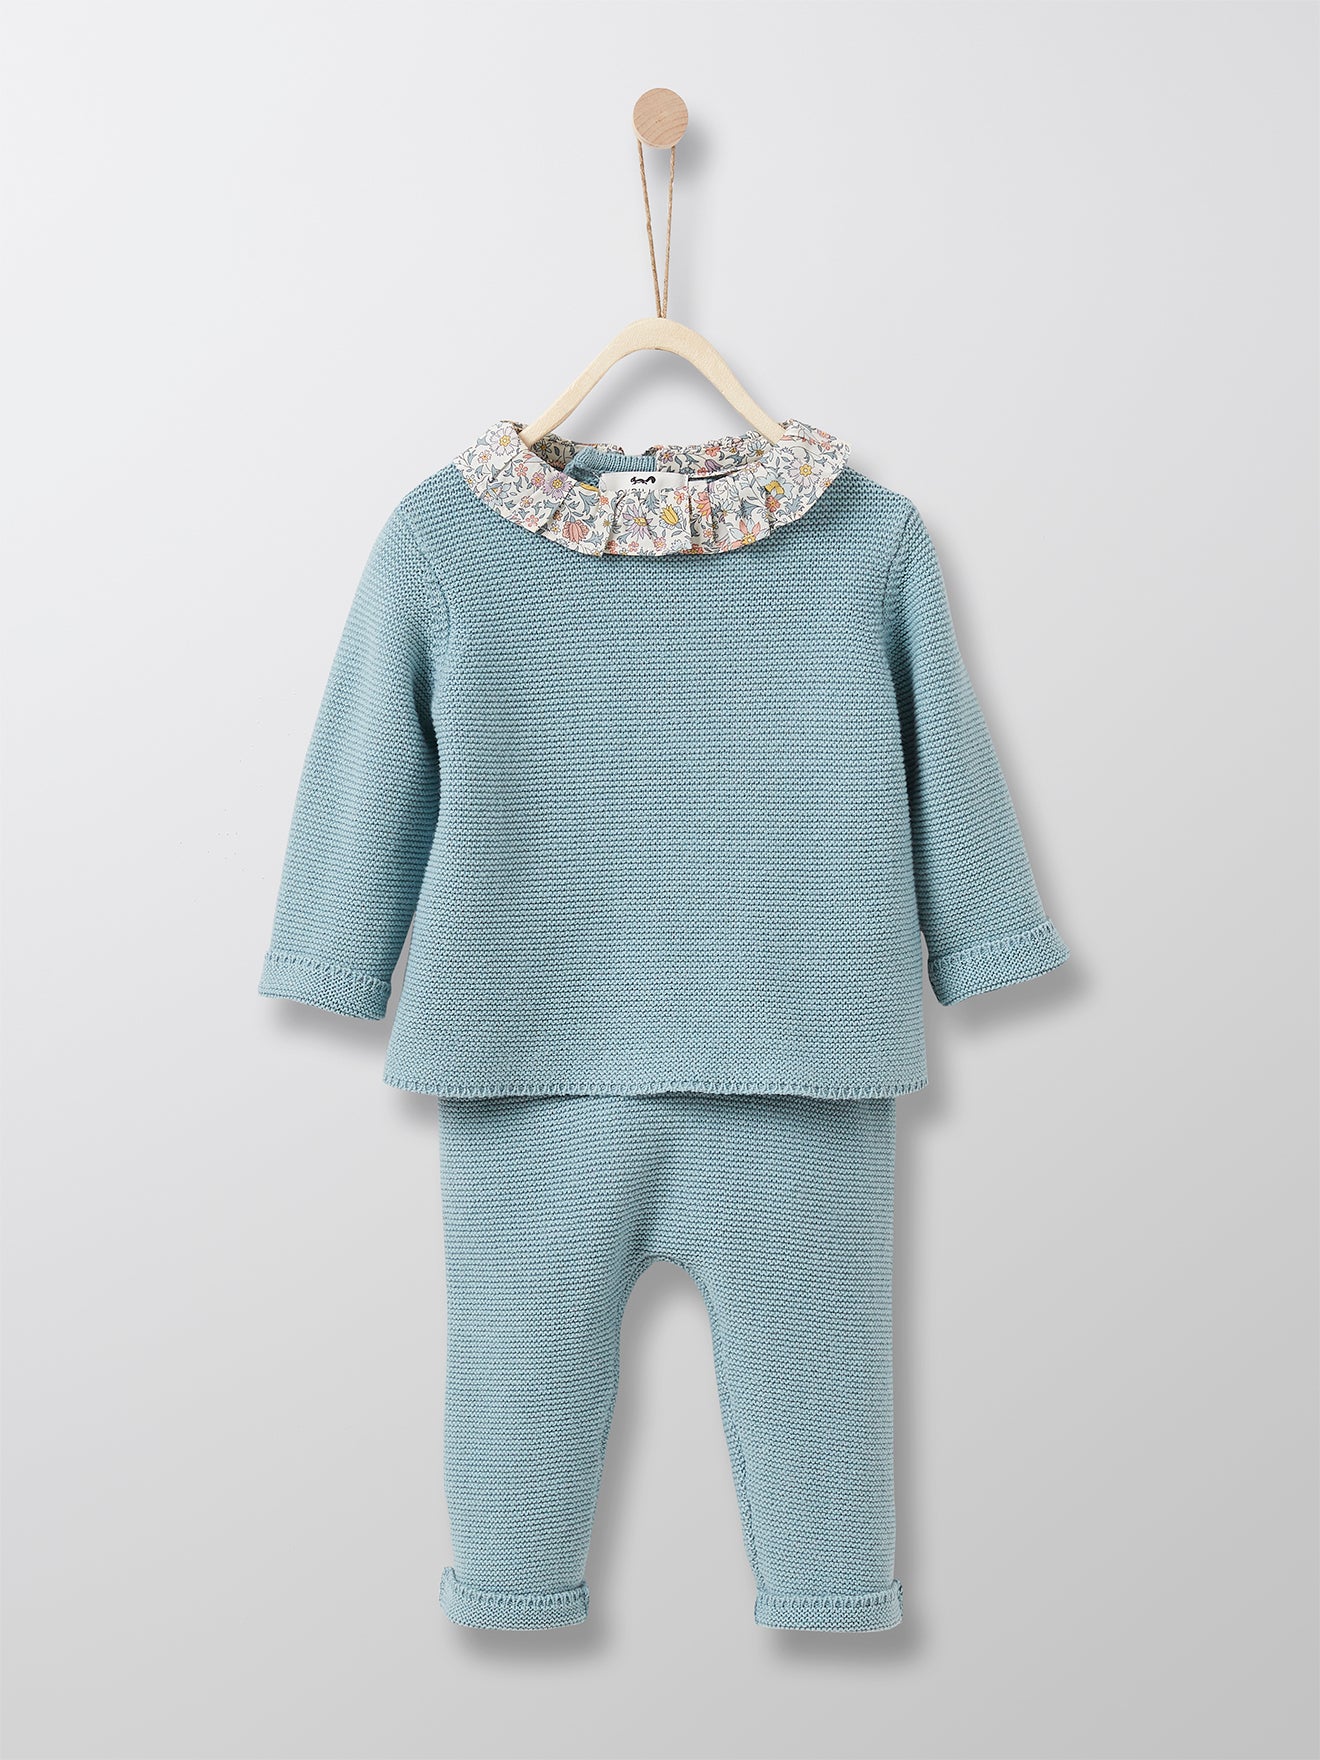 Cyrillus Paris | Liberty Sweater & Leggings Outfit | 100% Cotton | 1M, 3M